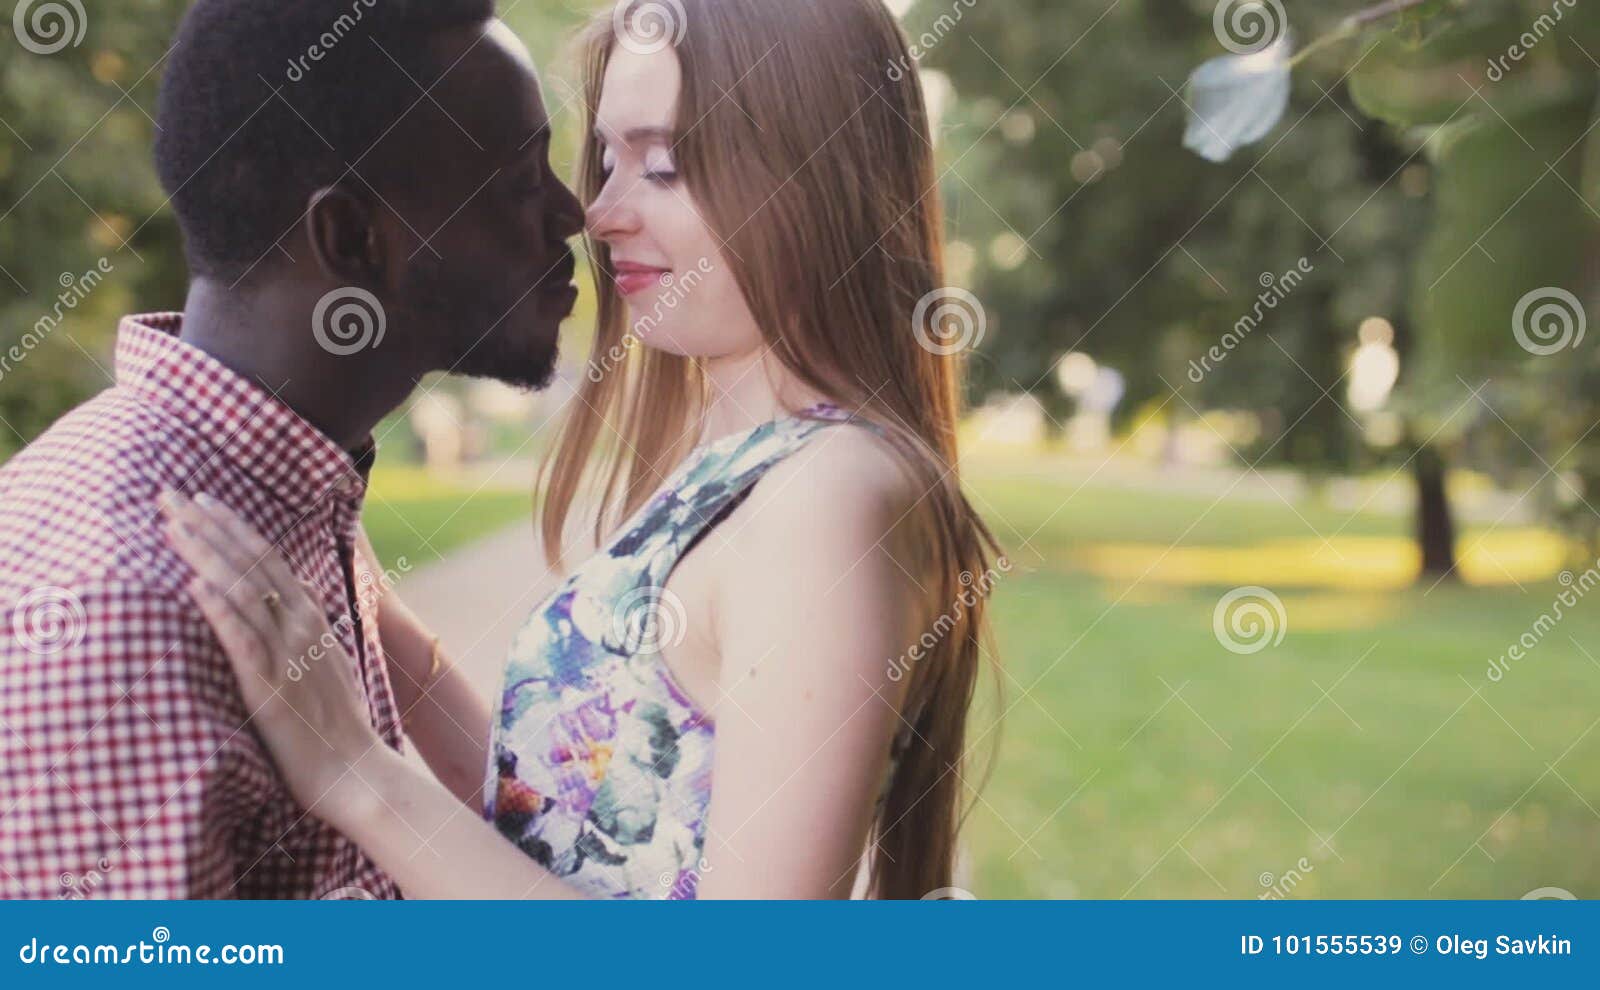 Date black girls men white 